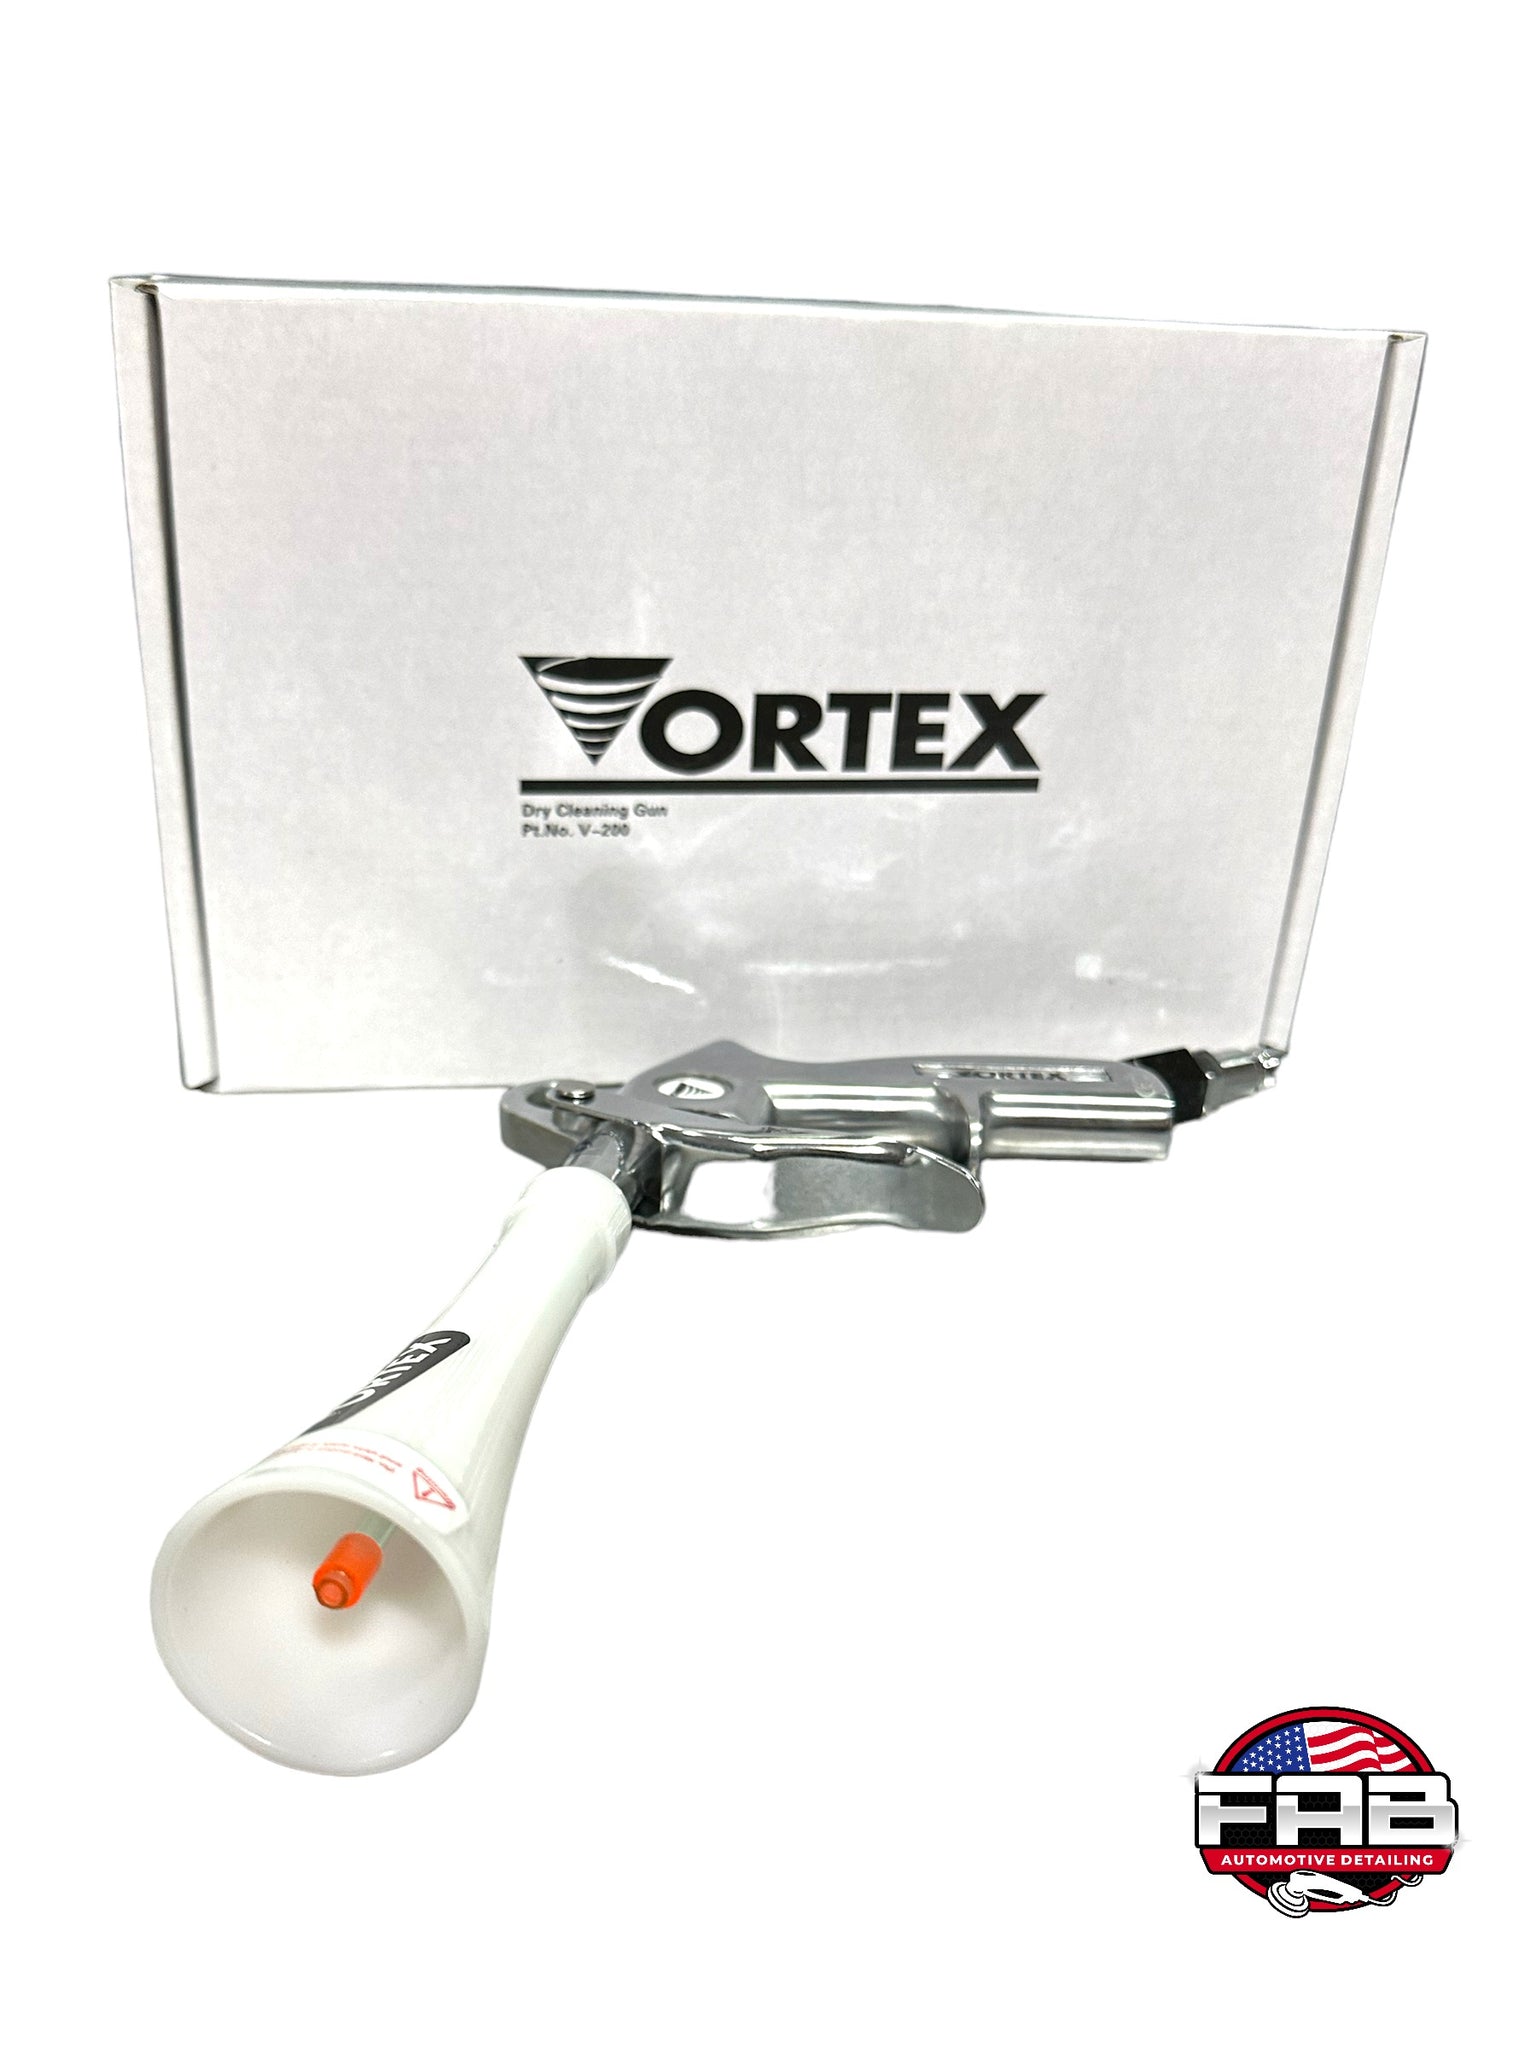 Vortex Cleaning Gun for Car Detailing